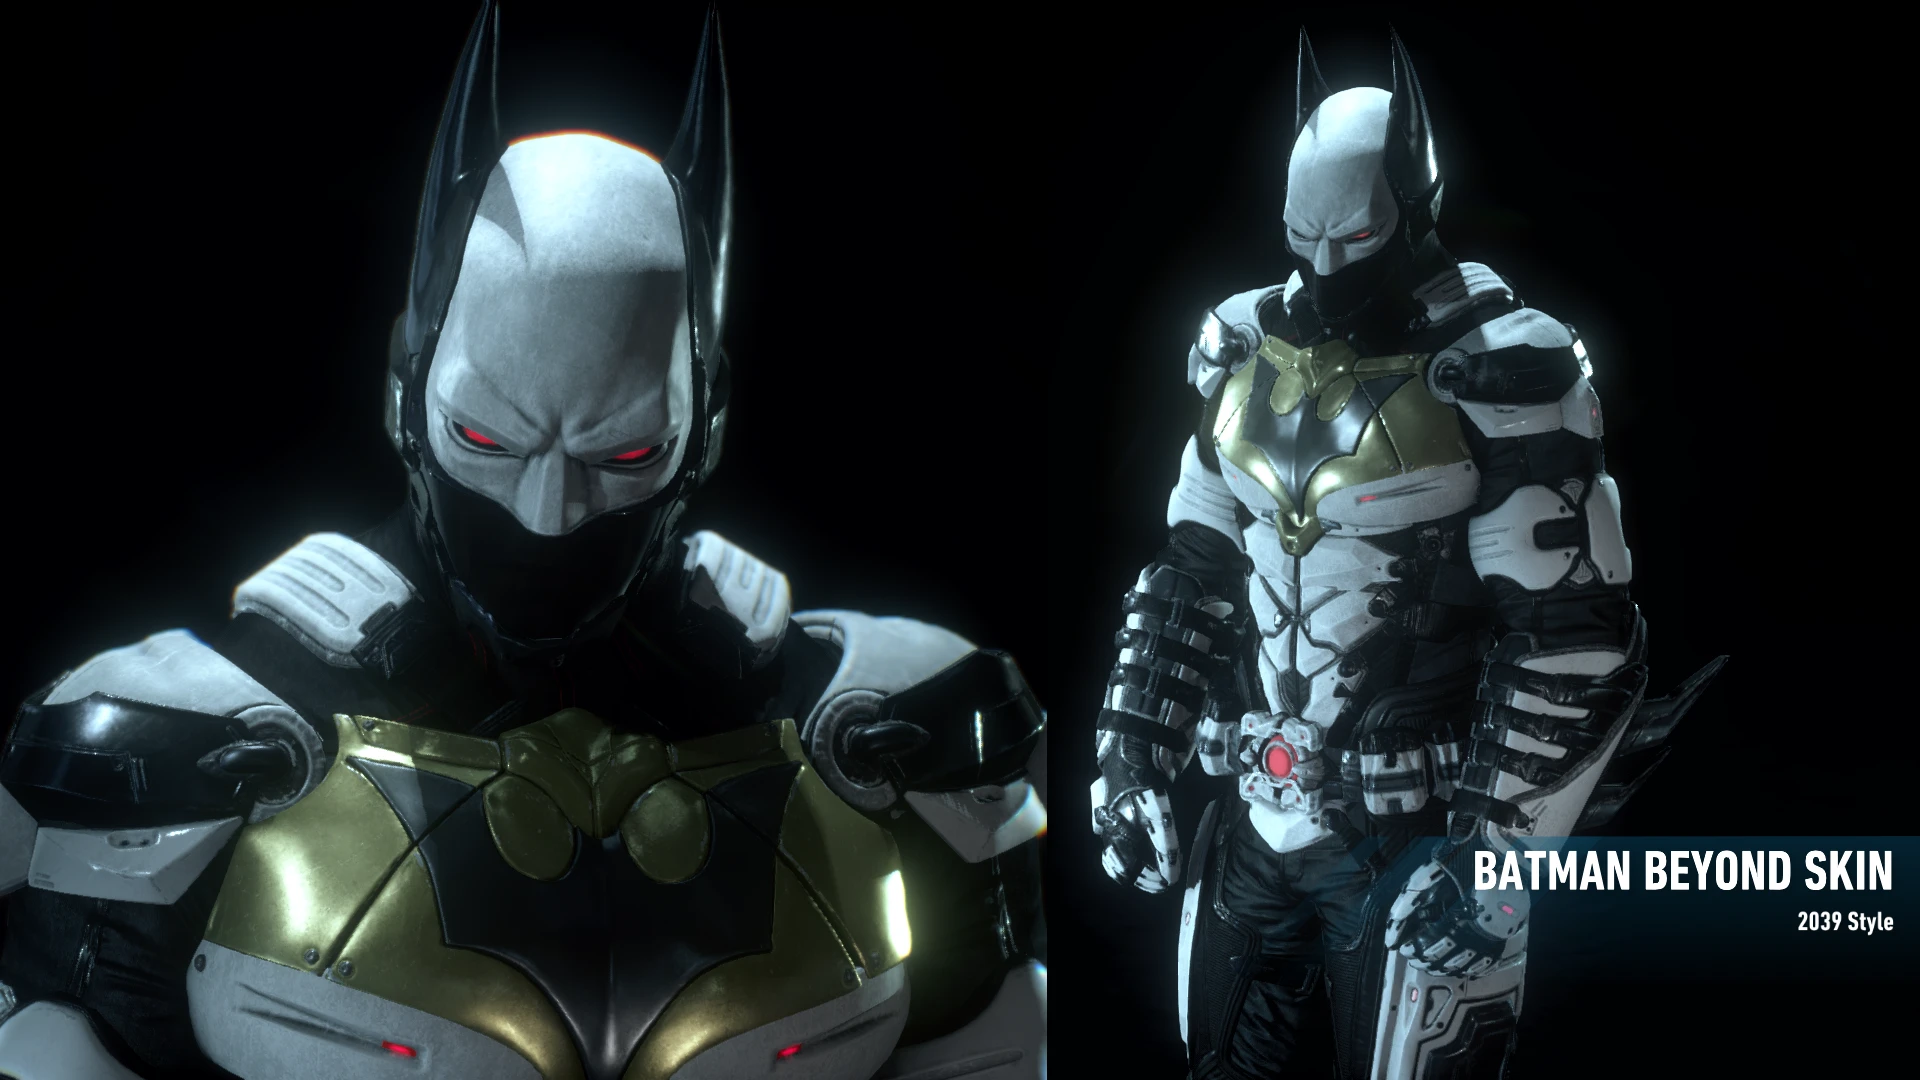 Nexus batman. Бэтмен Аркхем Бэтмен будущего. Бэтмен рыцарь Аркхема Бэтмен будущего. Batman Arkham Knight Batman 2039. Рыцарь Аркхема Бэтмен будущего.